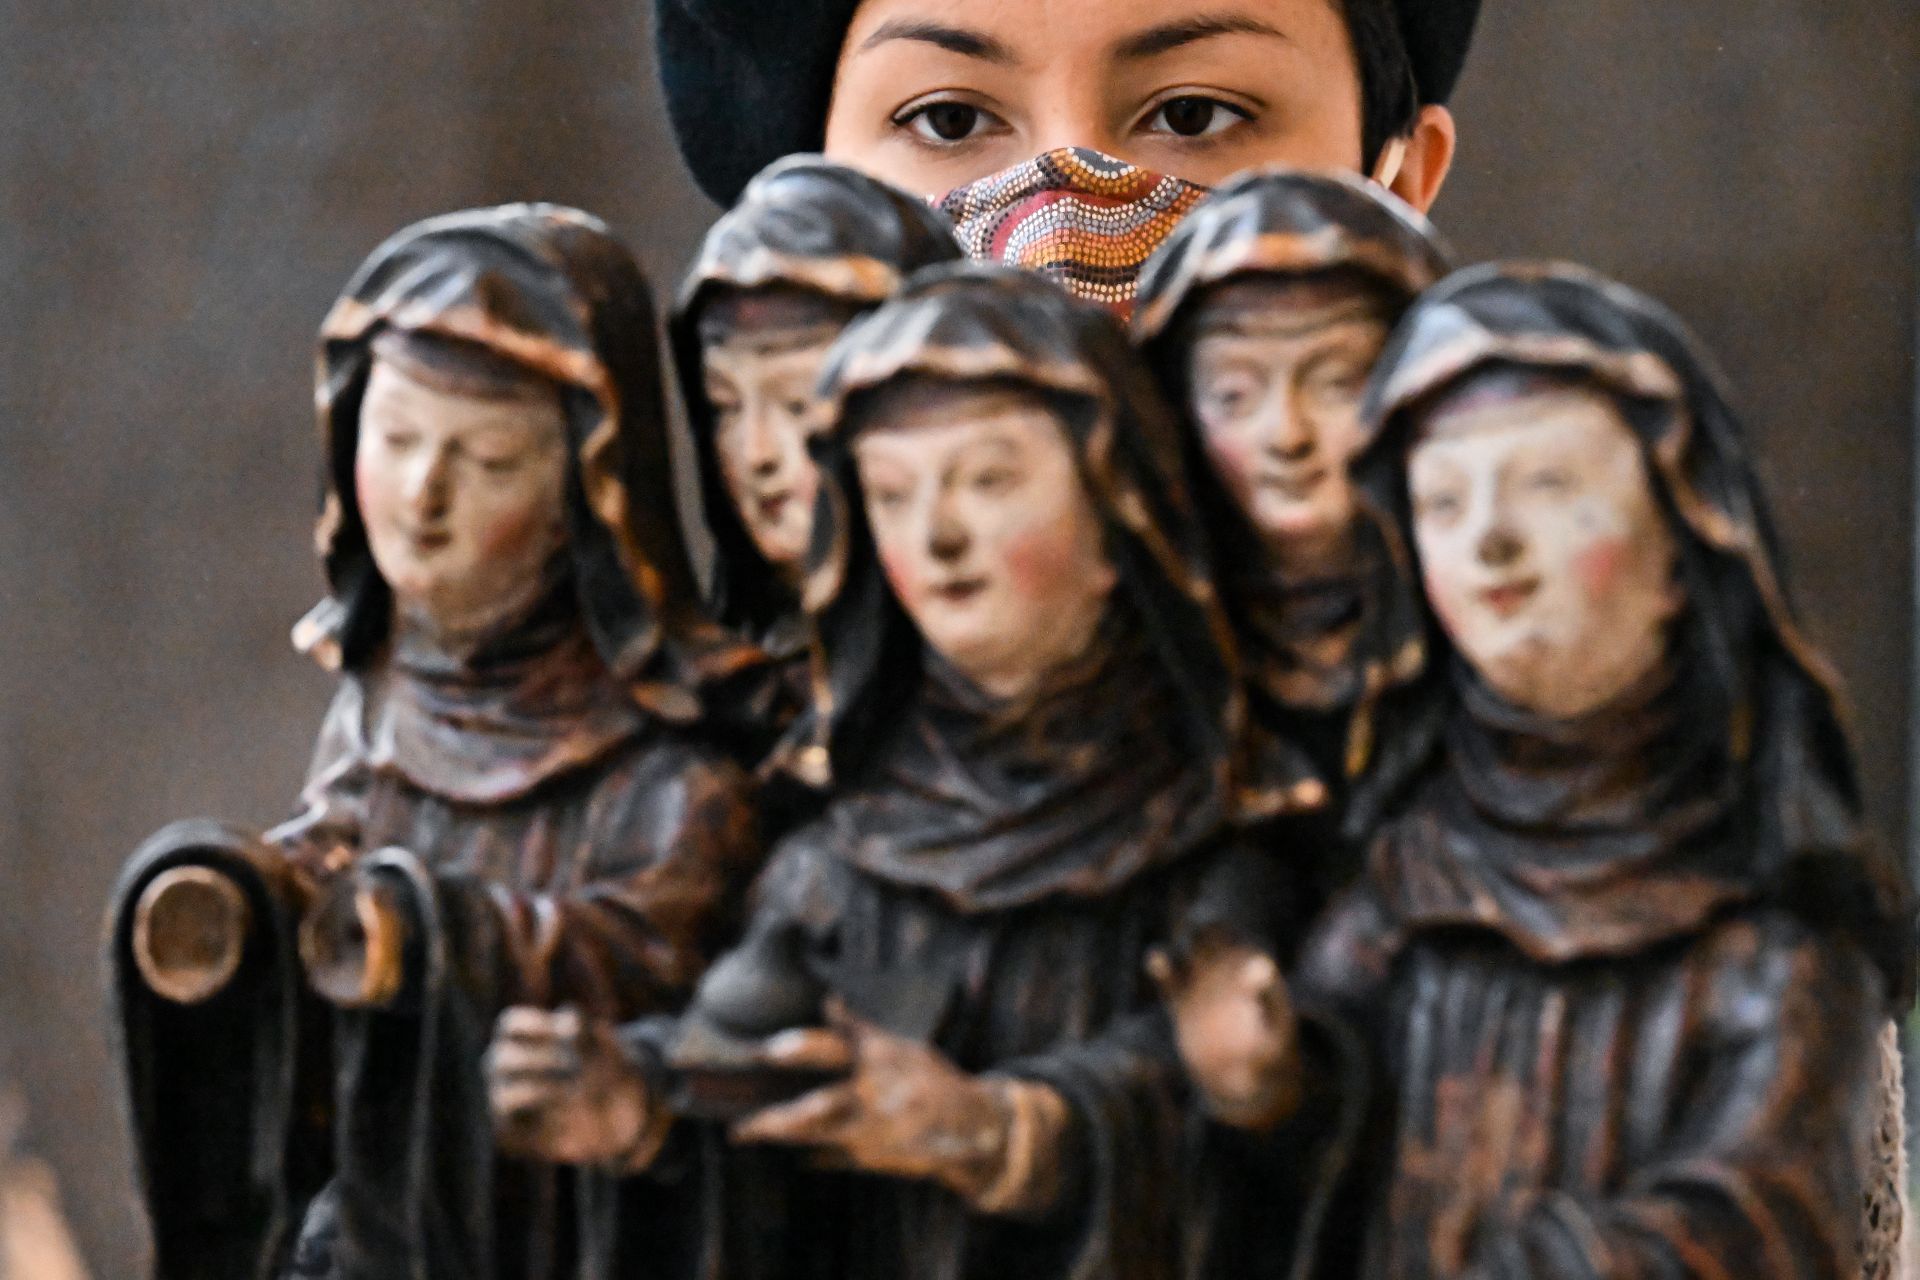 Жена разглежда Св. Валбурга от Айхщат с монахини от т.нар Бърелова Колекция, докато служителите извършват довършителни работи по ремонтирания музей. 